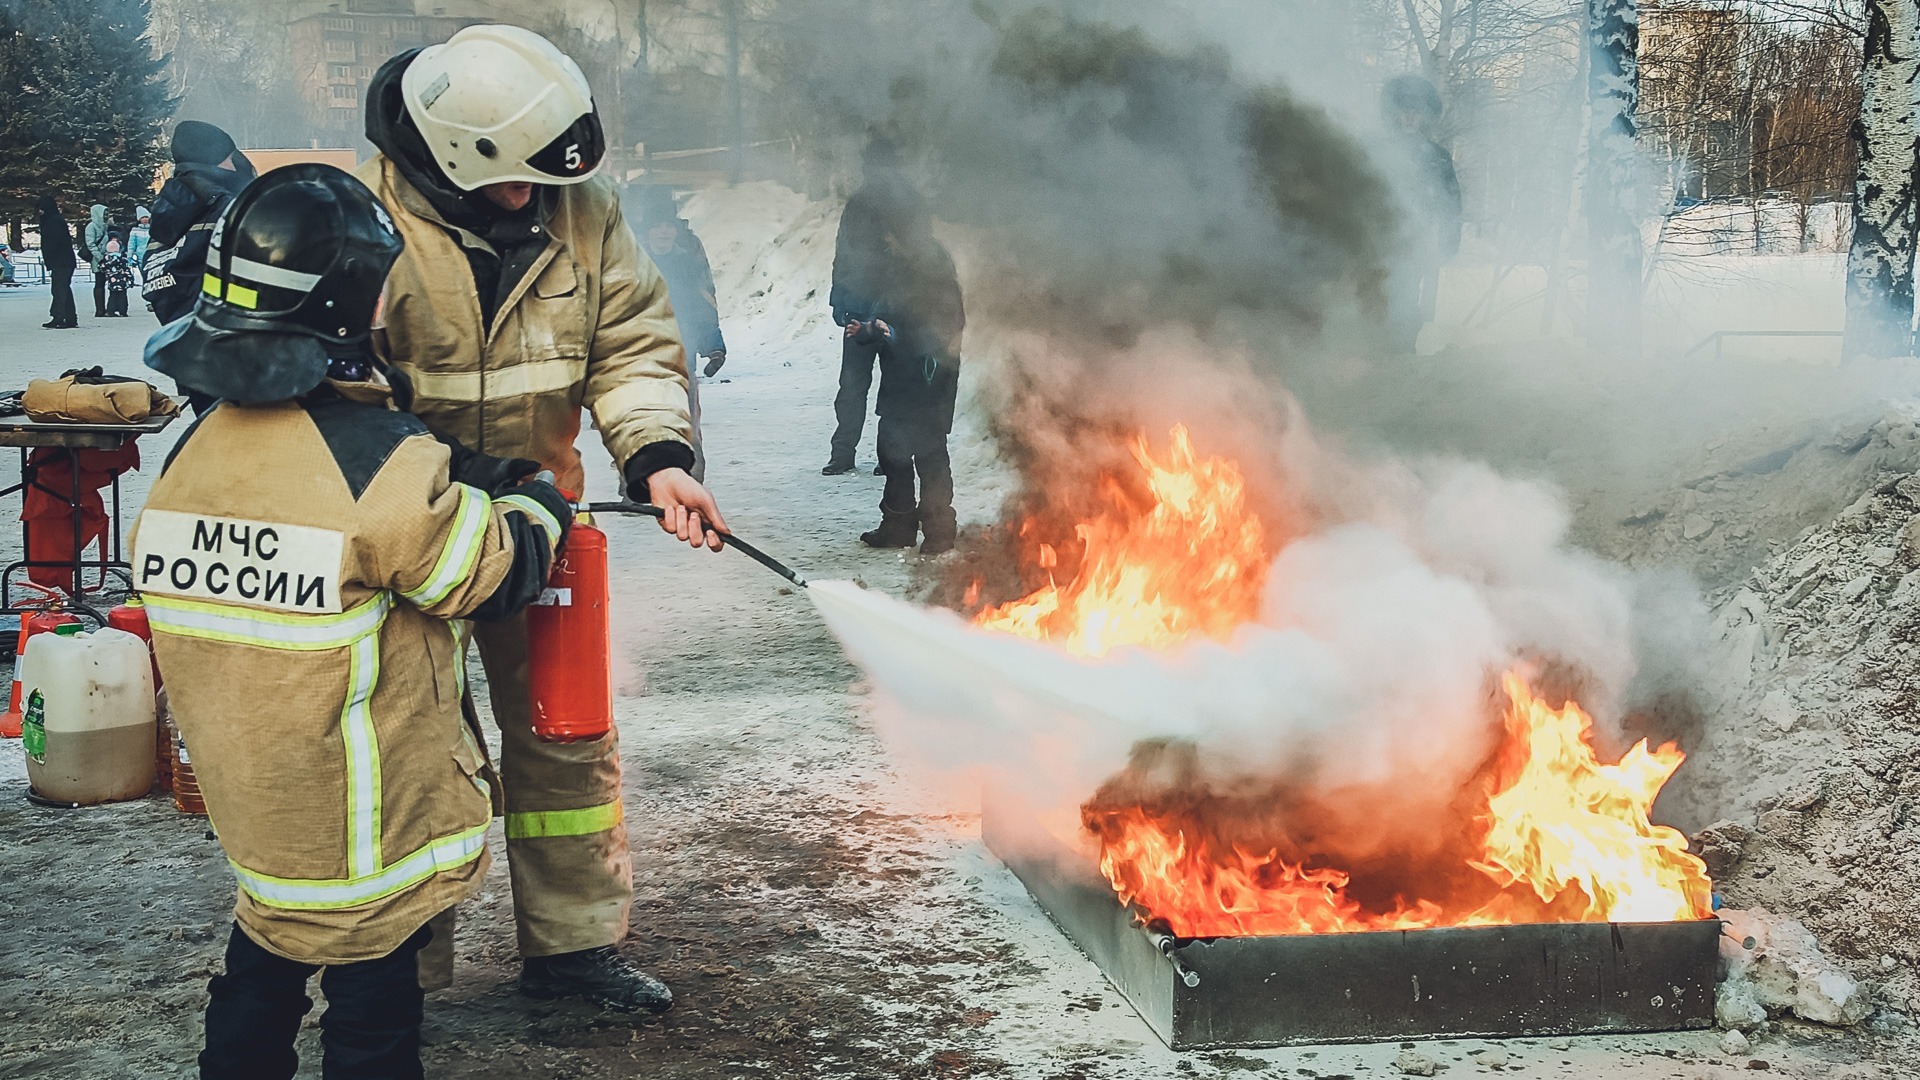 МЧС Башкирии предупредили жителей о применении открытого огня в Уфе